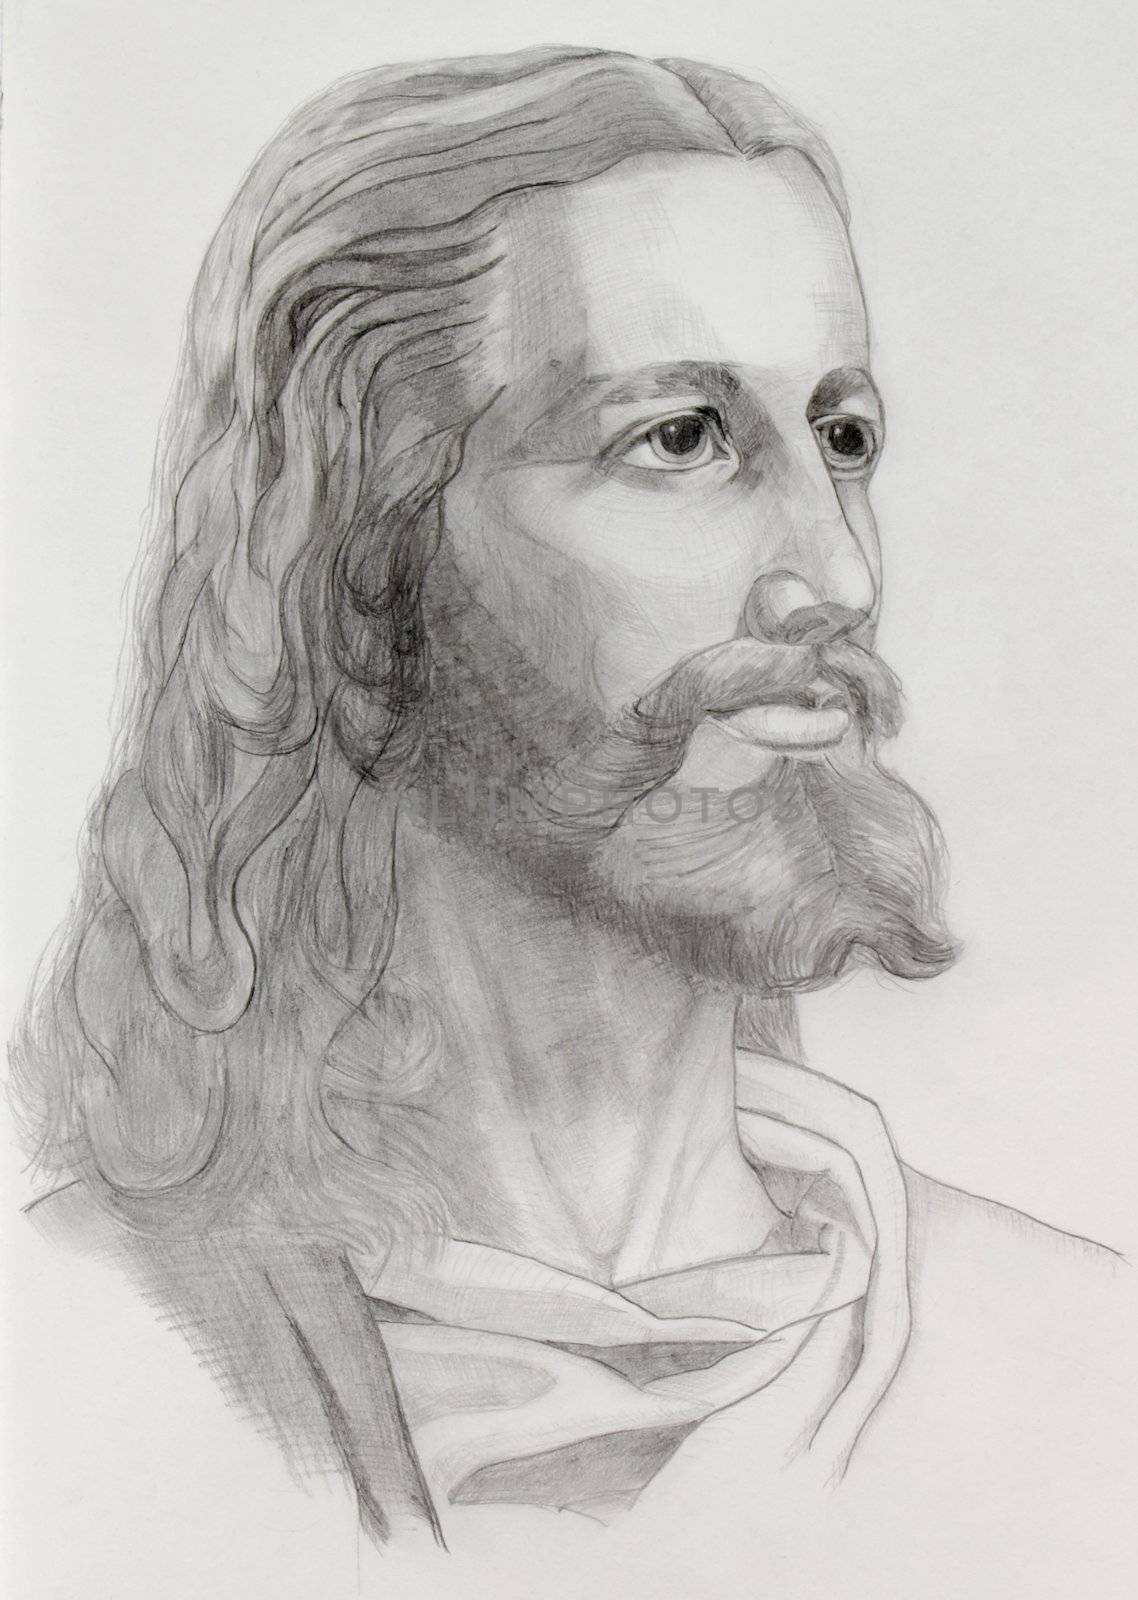 Grey pencils drawing of Jesus